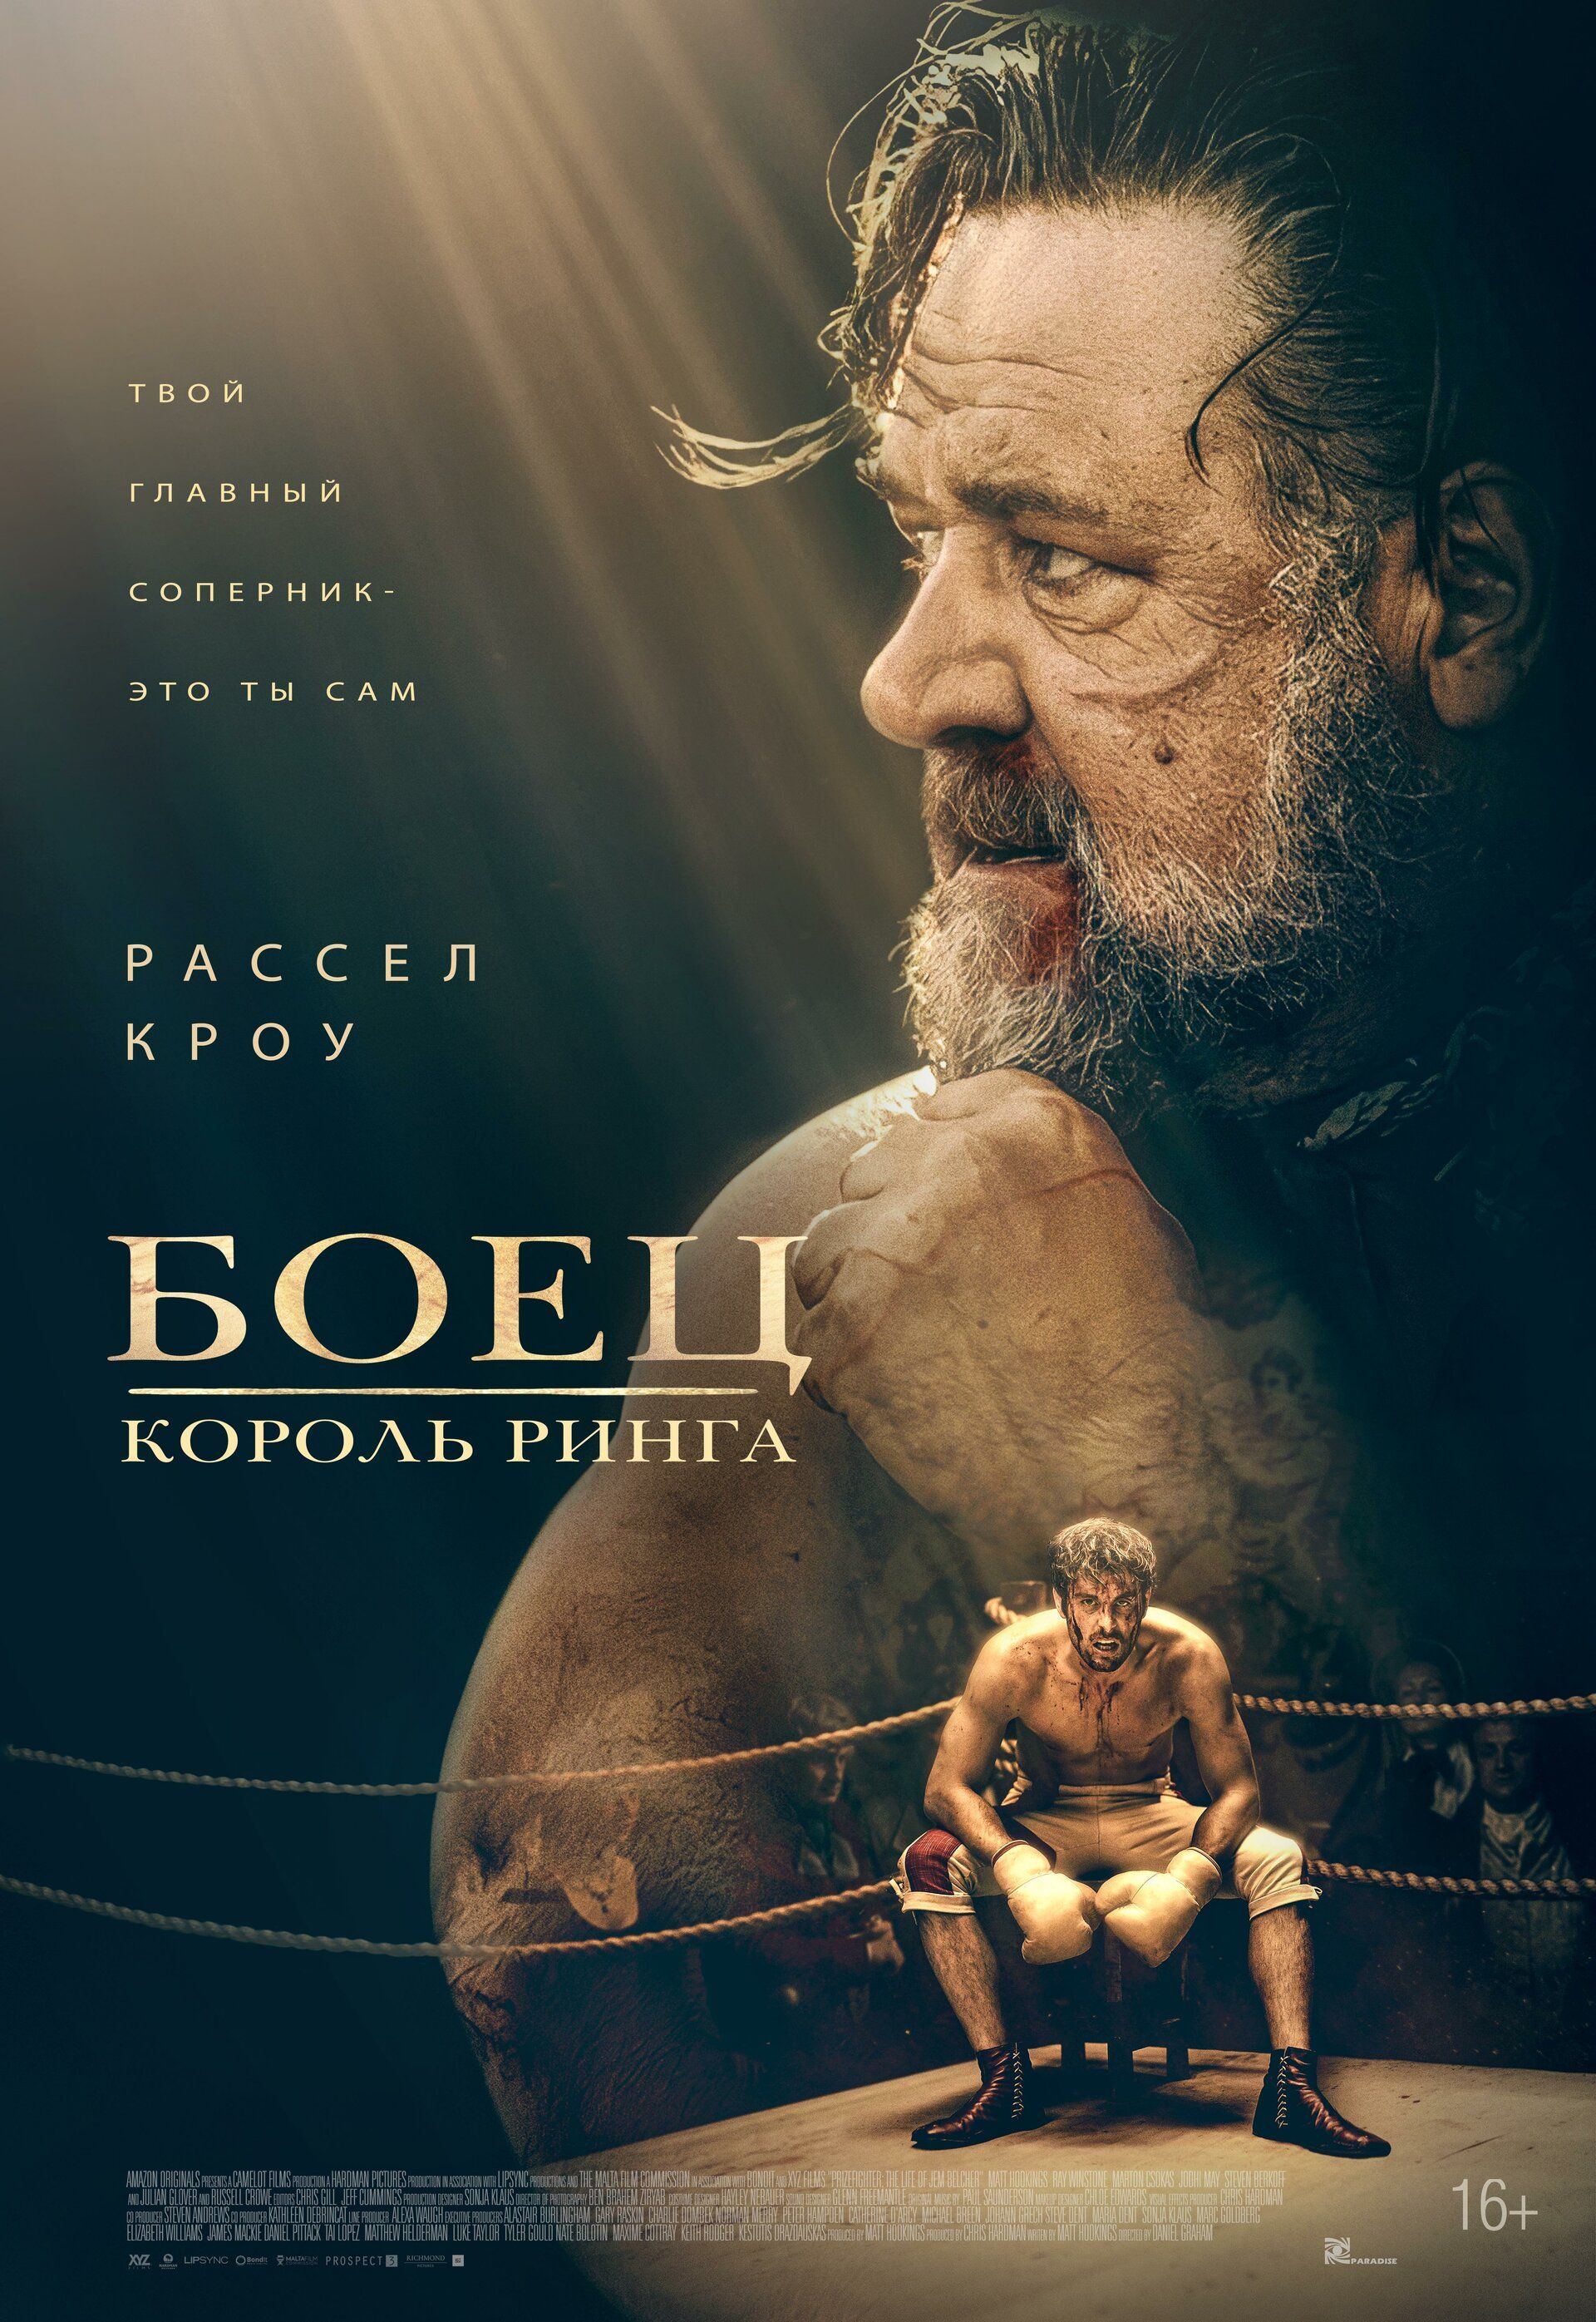 Постер к фильму Боец: Король ринга / Prizefighter: The Life of Jem Belcher (2022) WEB-DL 1080p от селезень | D | Локализованная версия